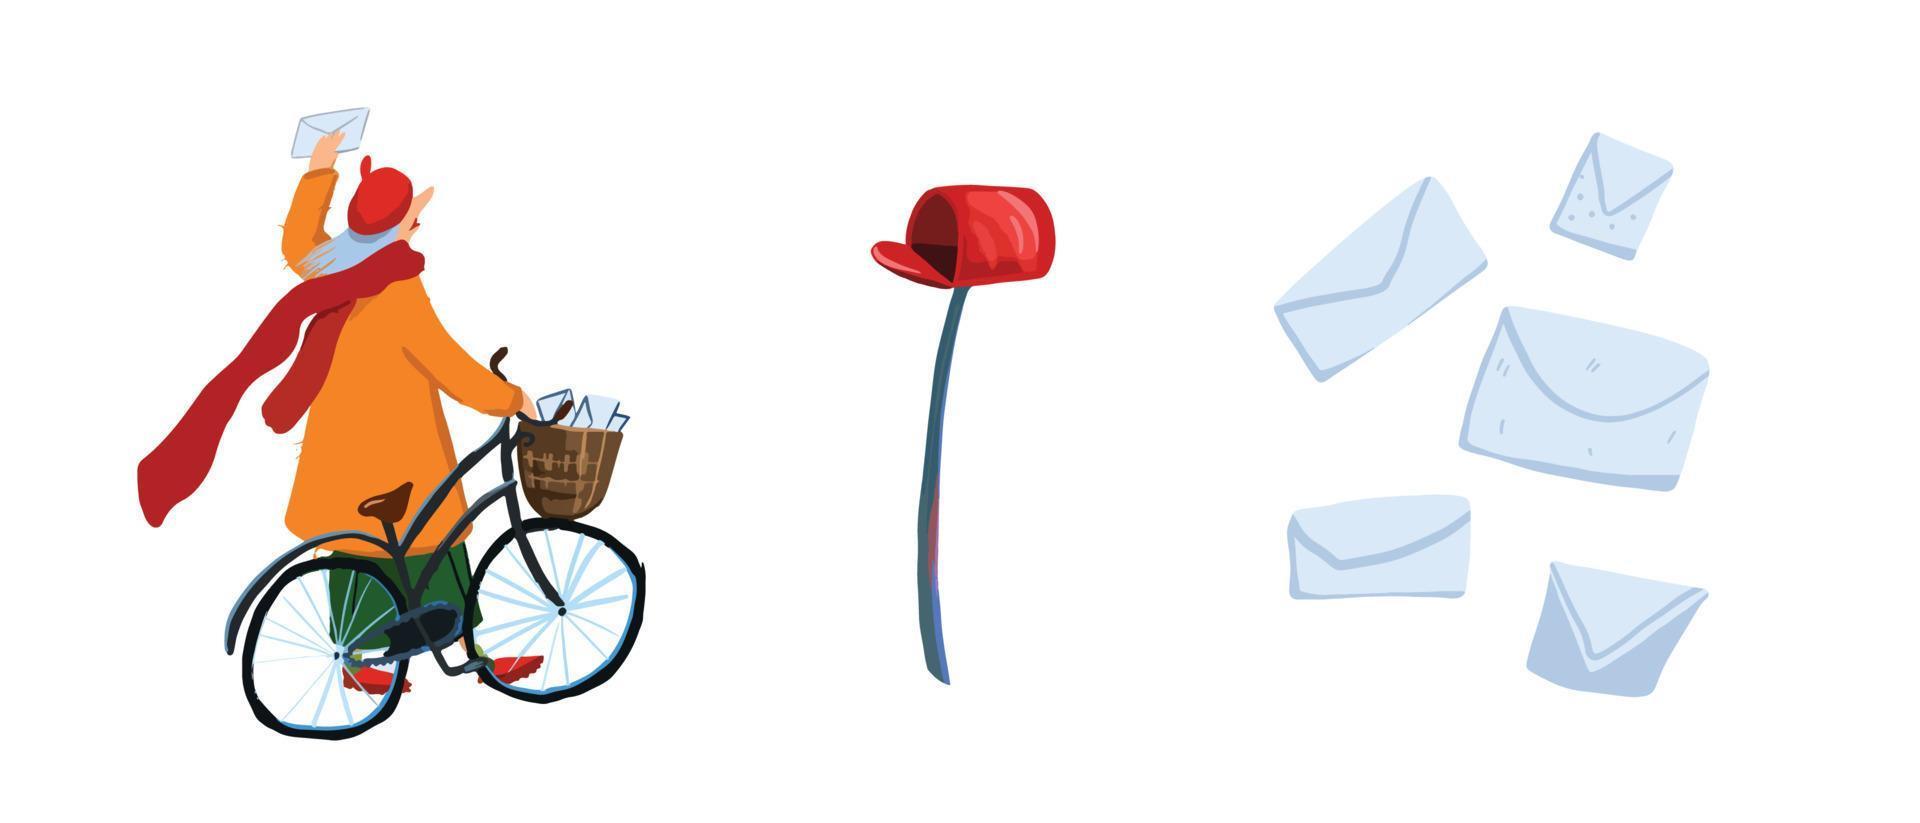 Cliparts zum Thema Postbote, Briefe und Briefkasten vektor